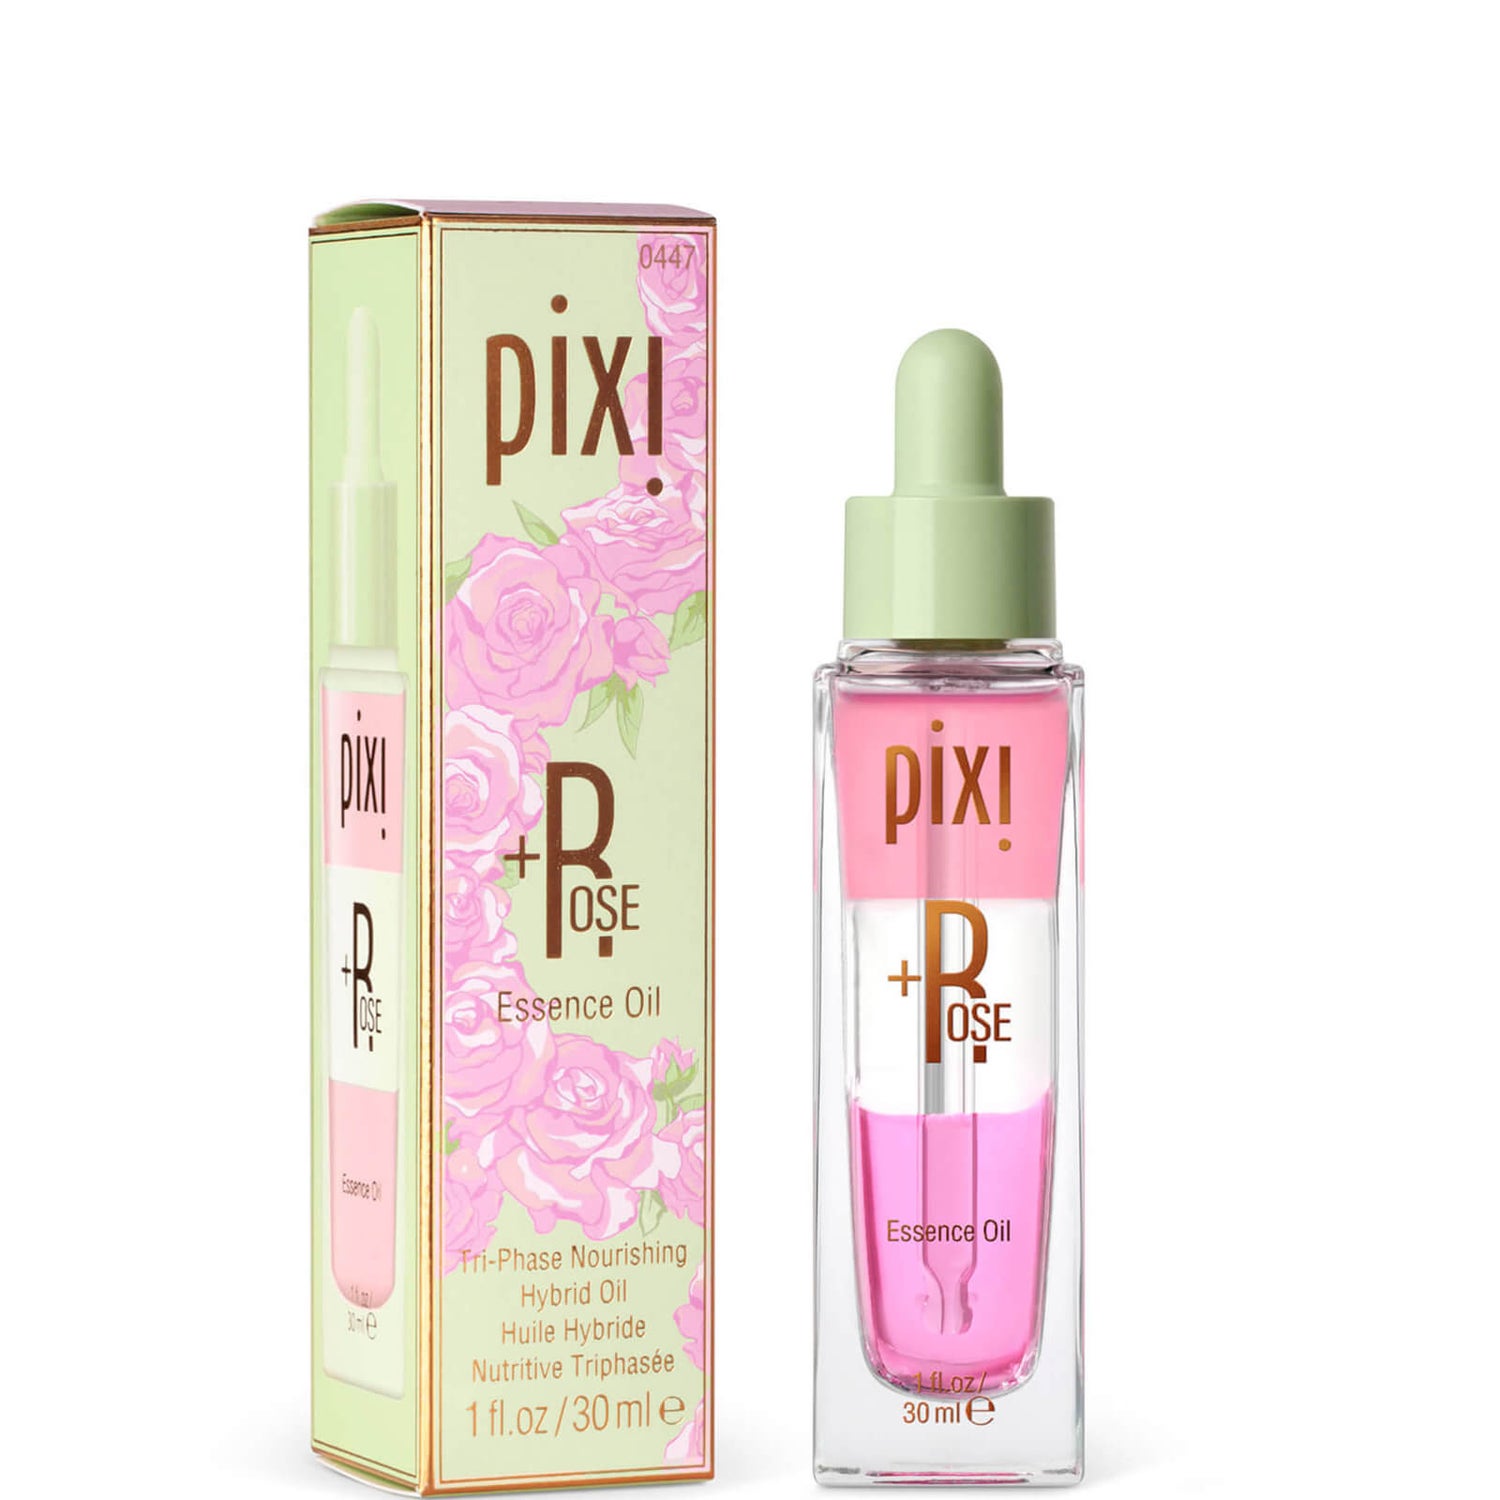 PIXI Rose Essence Priming Oil 30ml